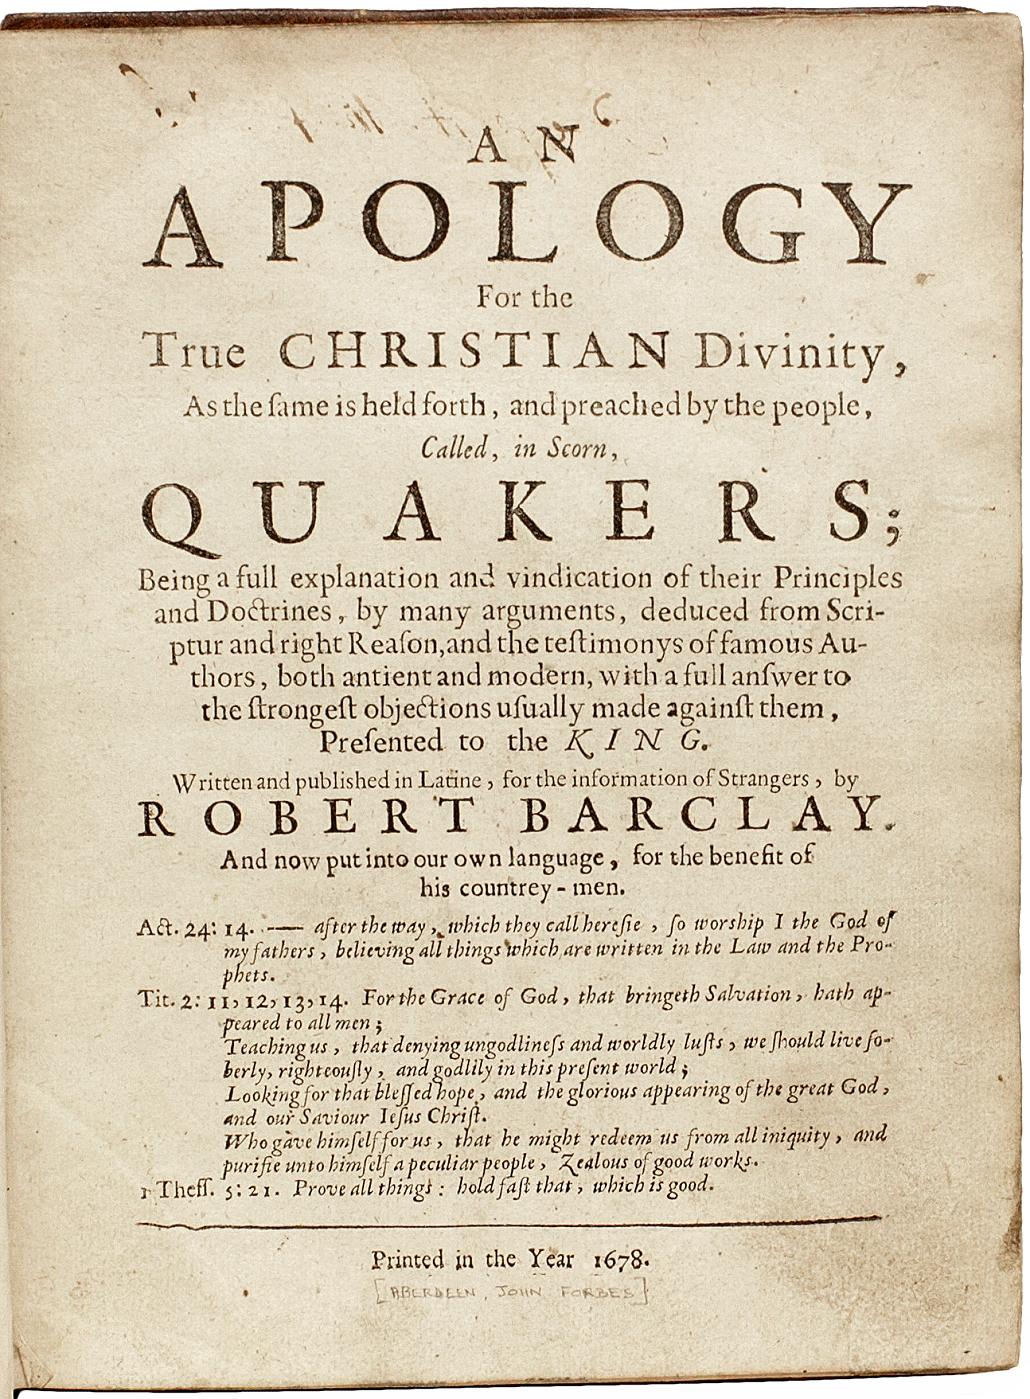 AUTOR: BARCLAY, Robert. 

TITEL: Eine Apologie für die wahre christliche Gottheit, wie sie von den Leuten, die verächtlich Quäker genannt werden, vorgetragen und gepredigt wird.

HERAUSGEBER: [Aberdeen(?): John Forbes(?)], 1678.

BESCHREIBUNG: ERSTE